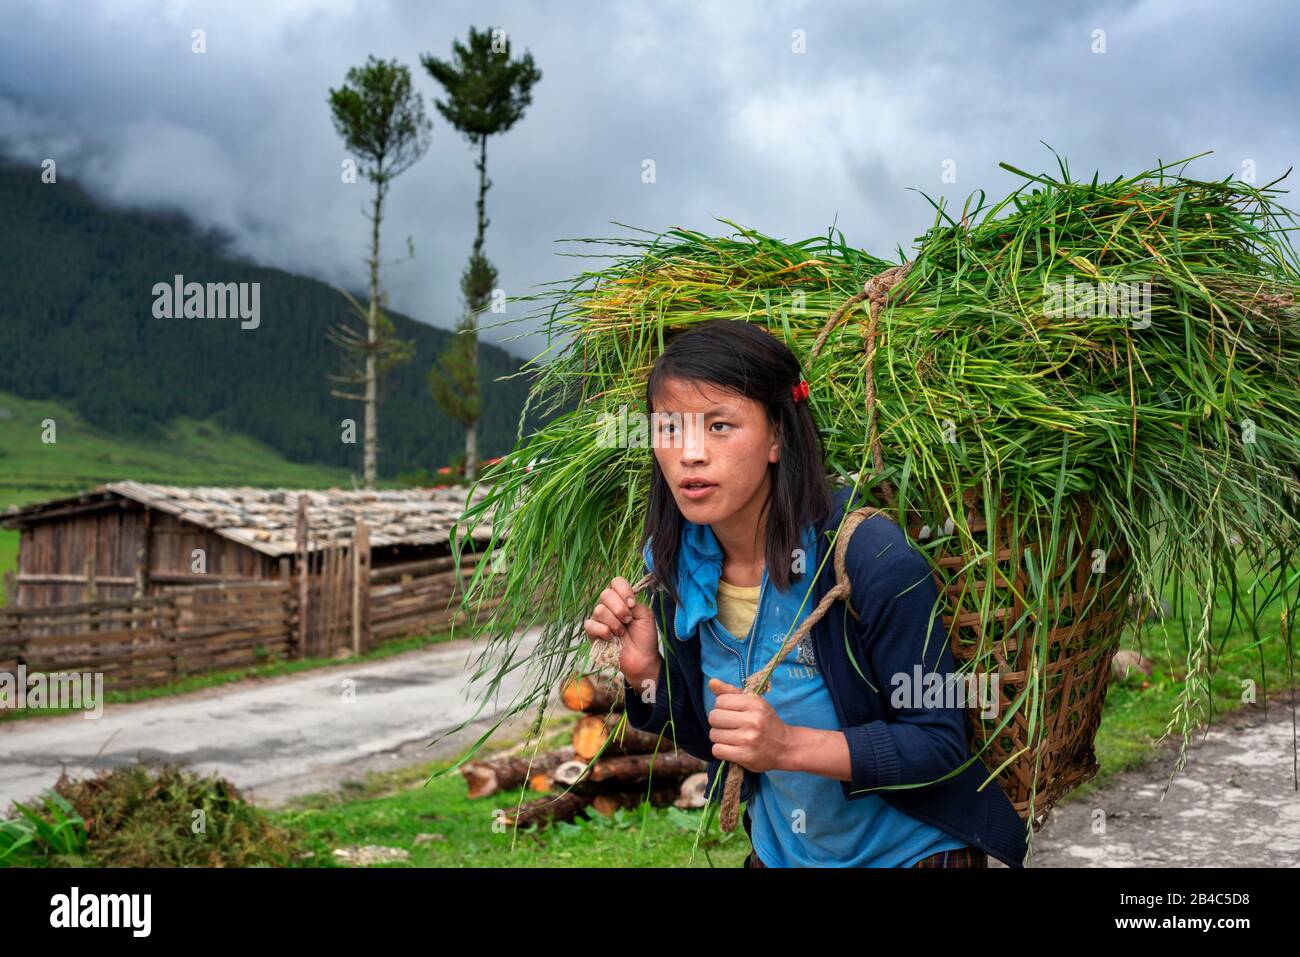 Village De Gangtey, Vallée De Phobjikha, Bhoutan Occidental, Asie. Une femme qui travaille charge beaucoup d'herbe Banque D'Images